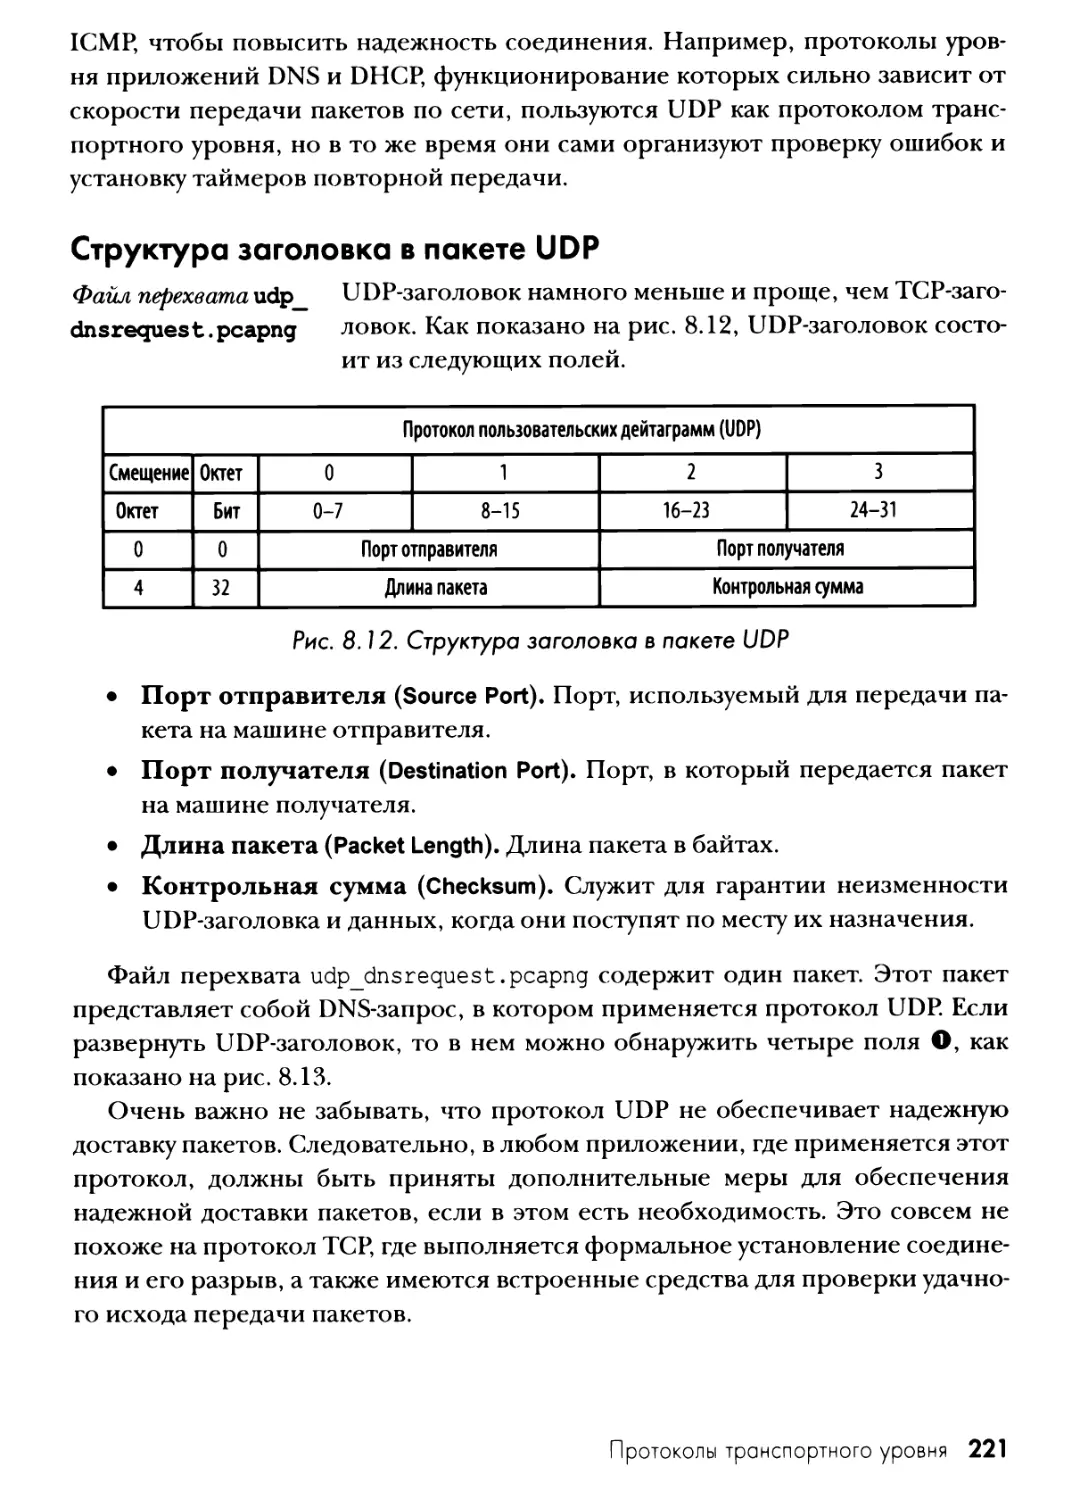 Структура заголовка в пакете UDP